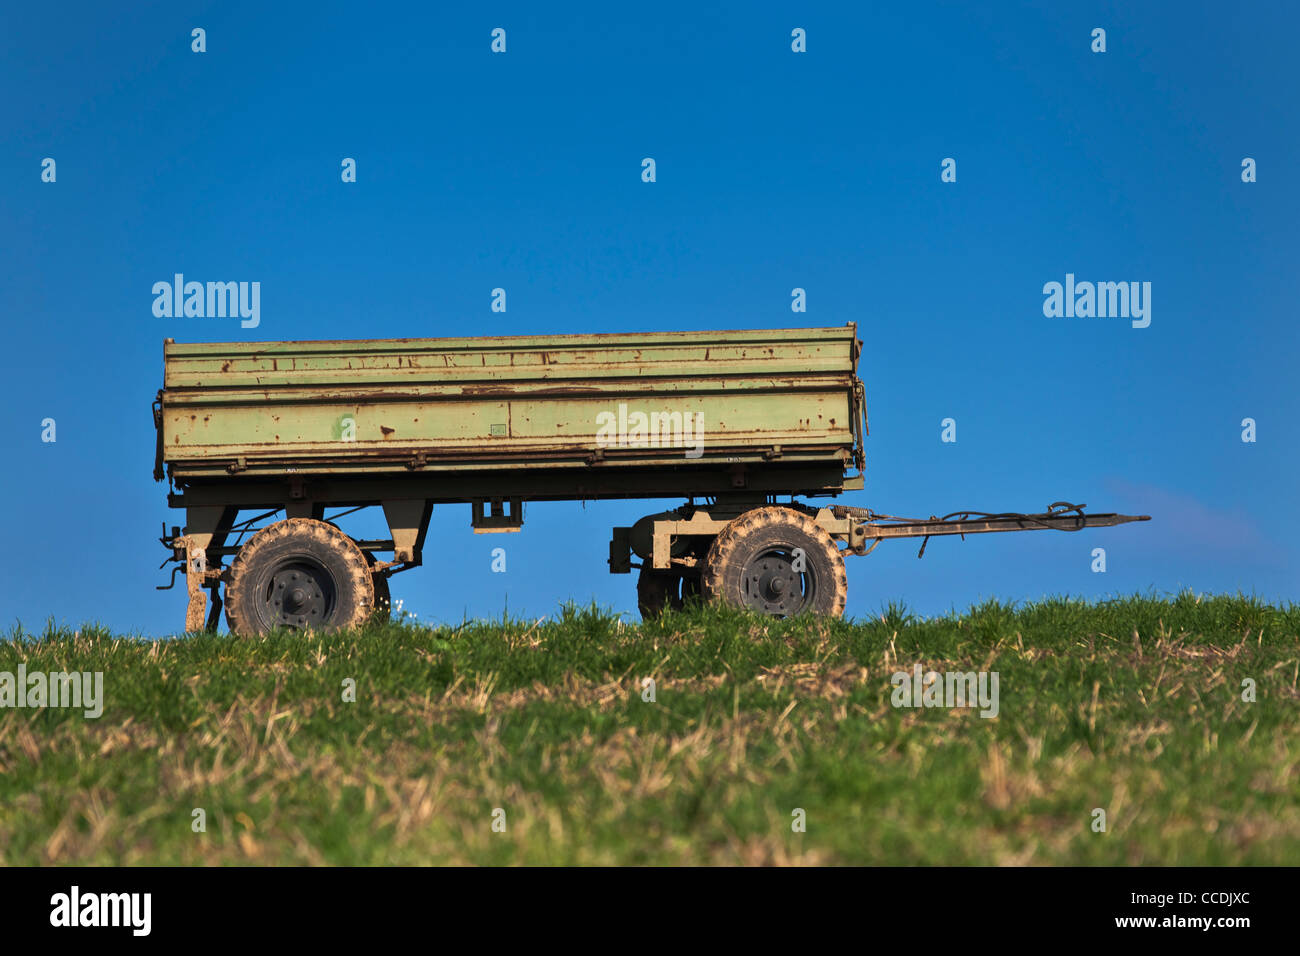 Detailansicht eines Anhängers auf einem Feld | Detail photo of a trailer on a field Stock Photo